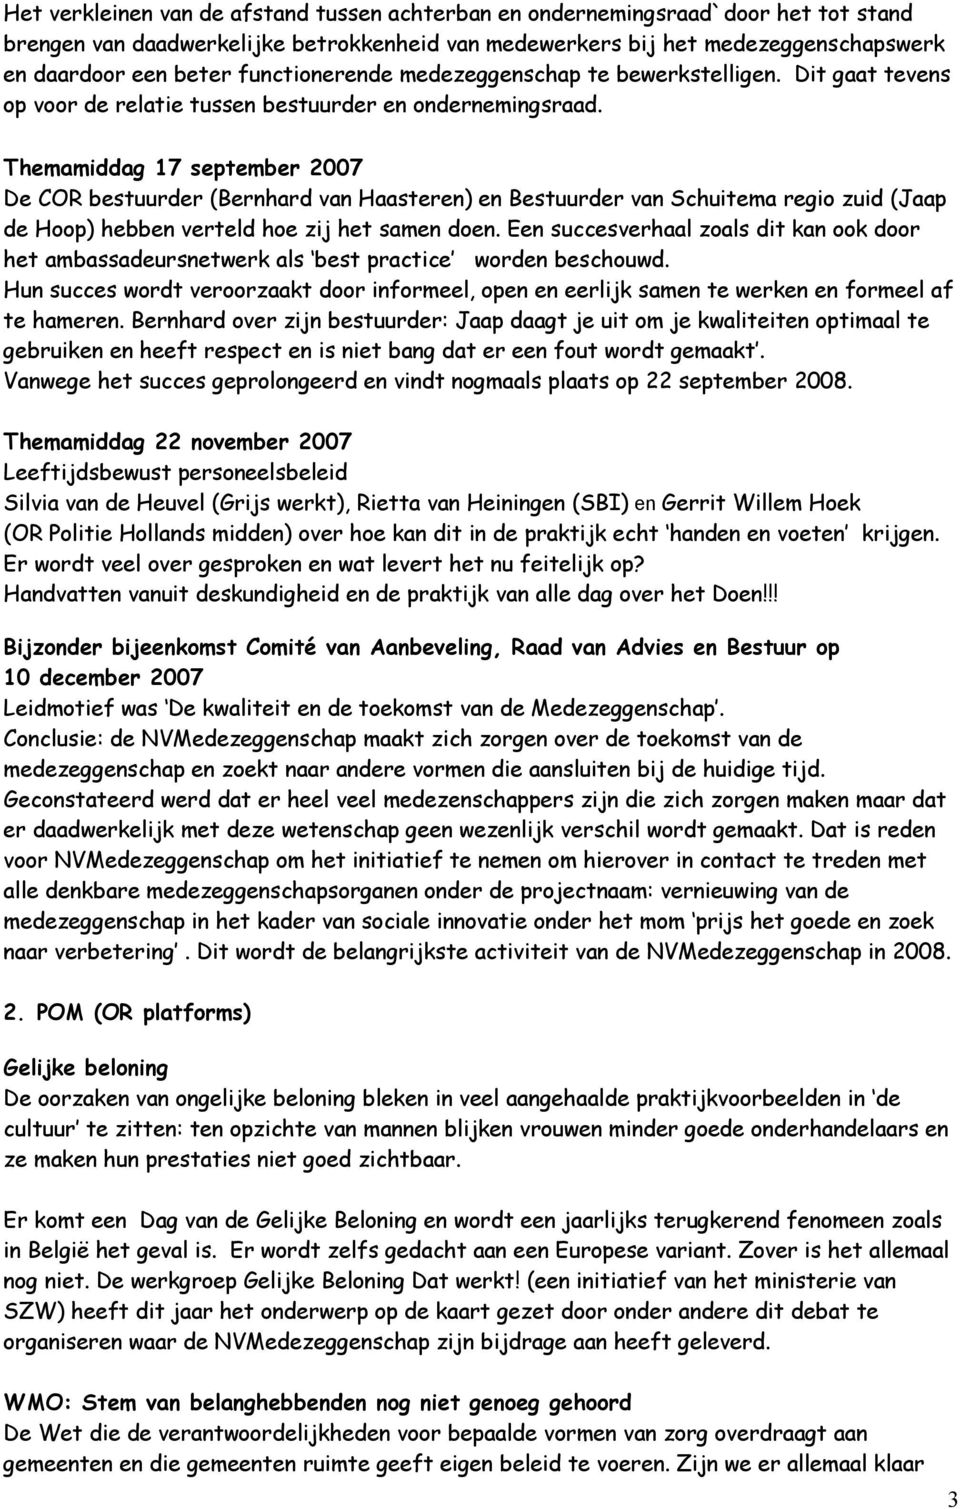 Themamiddag 17 september 2007 De COR bestuurder (Bernhard van Haasteren) en Bestuurder van Schuitema regio zuid (Jaap de Hoop) hebben verteld hoe zij het samen doen.